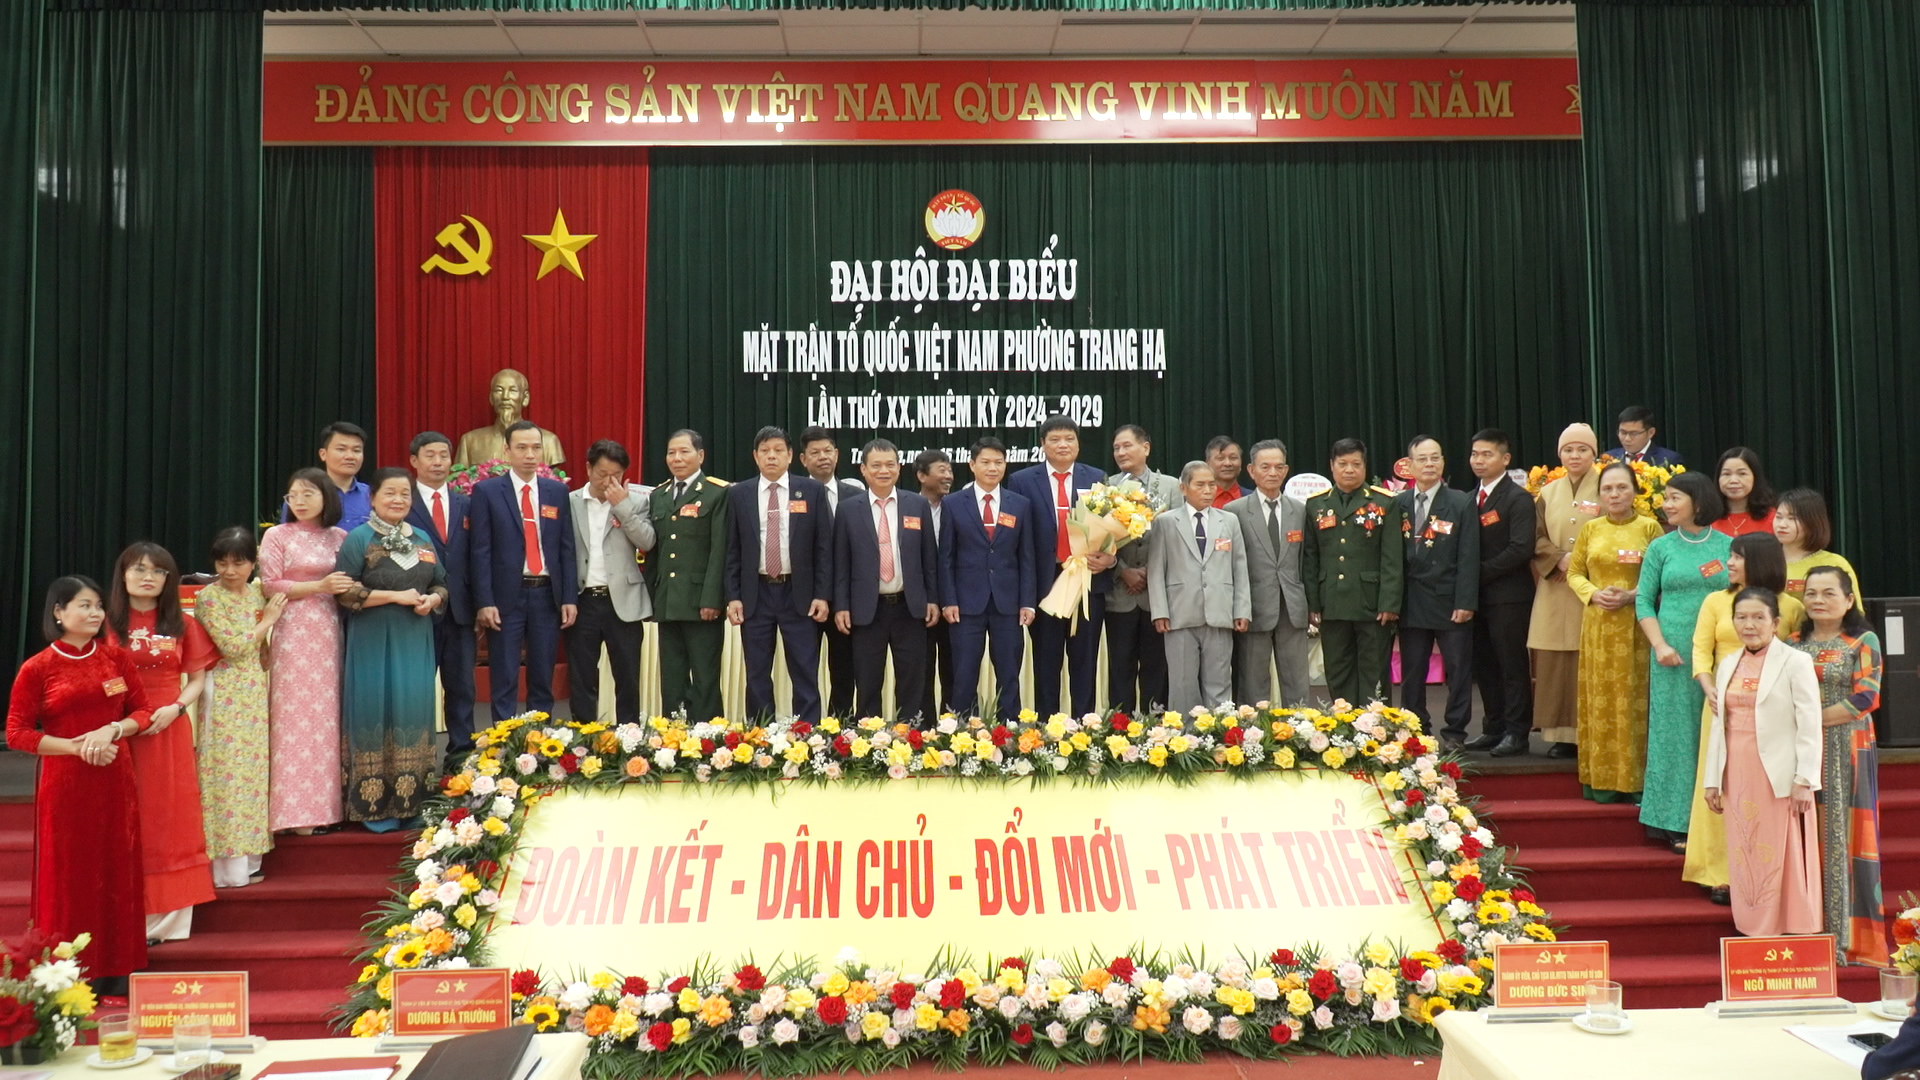 Đại hội Đại biểu MTTQ phường Trang Hạ, lần thứ XX, nhiệm kỳ 2024 - 2029